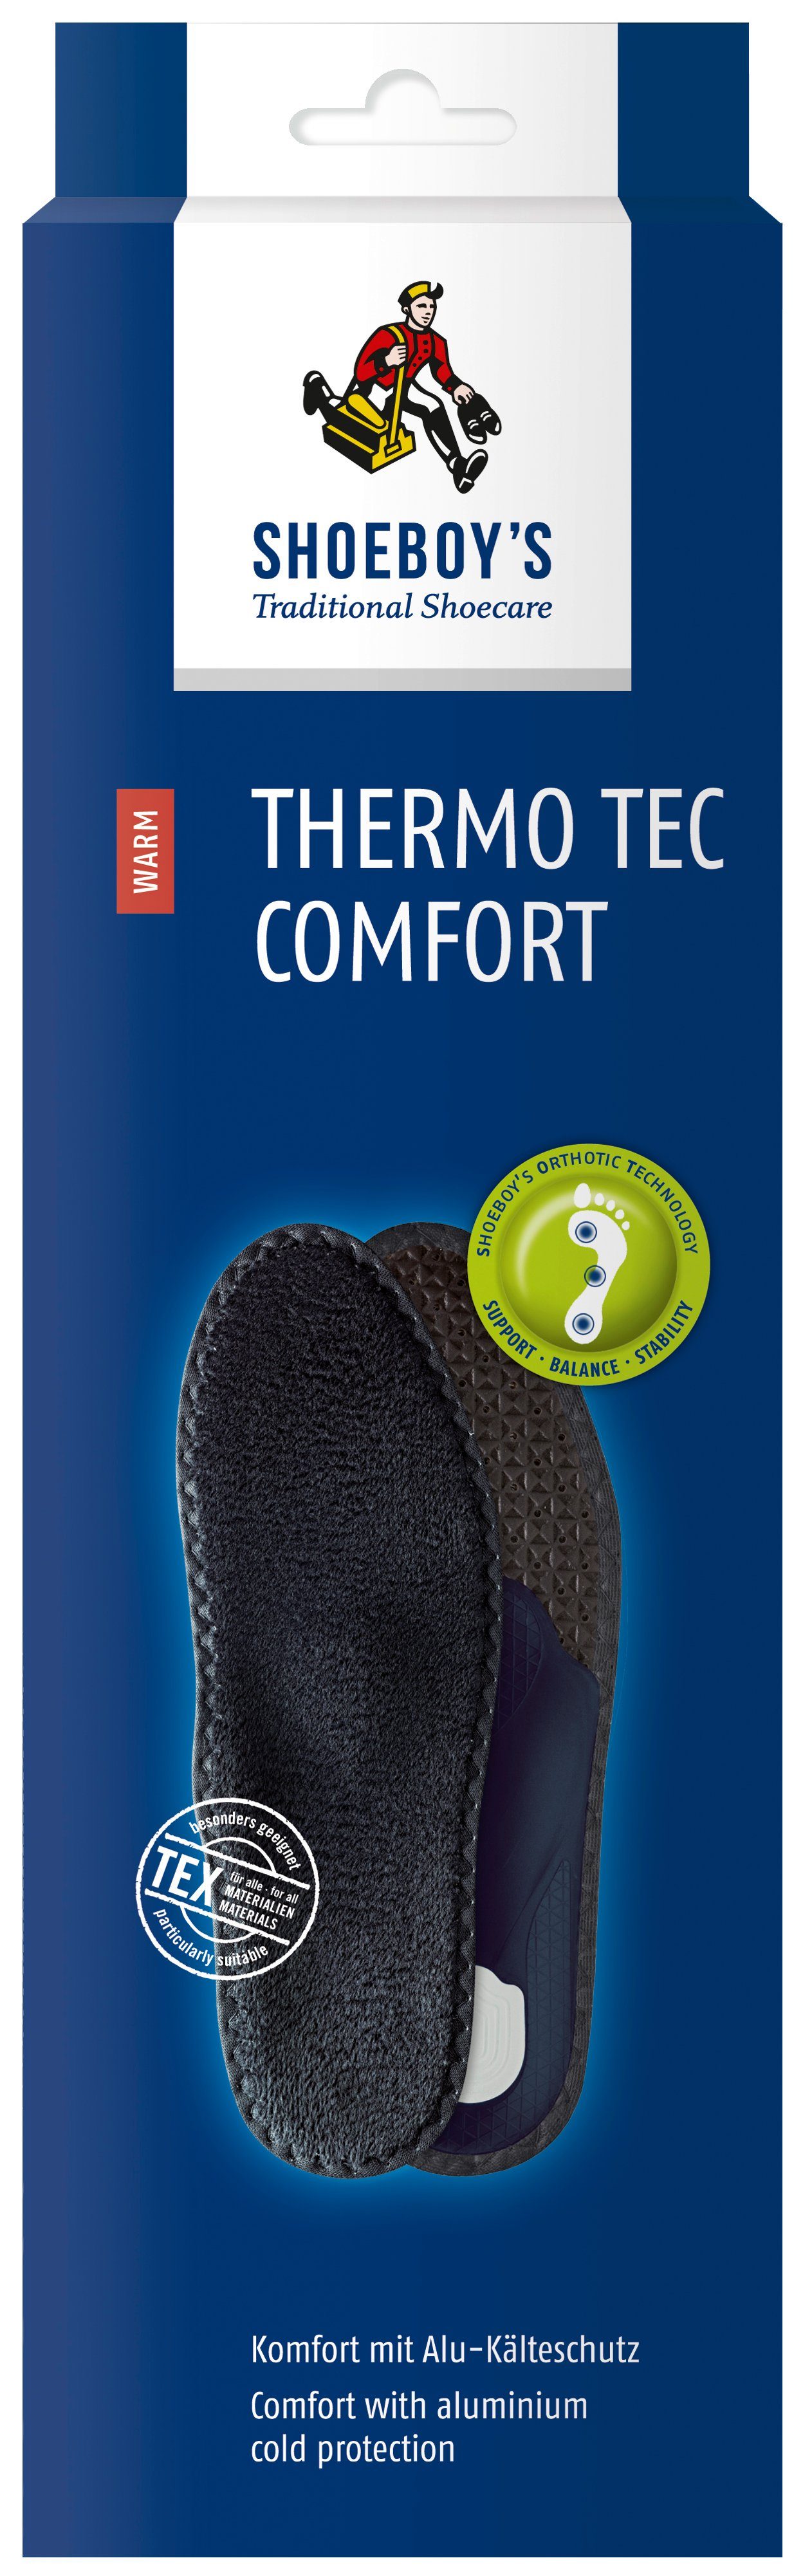 Shoeboys Fußbetteinlage Thermo Tec Comfort - Komfort mit Alu-Kälteschutz für kalte Winter